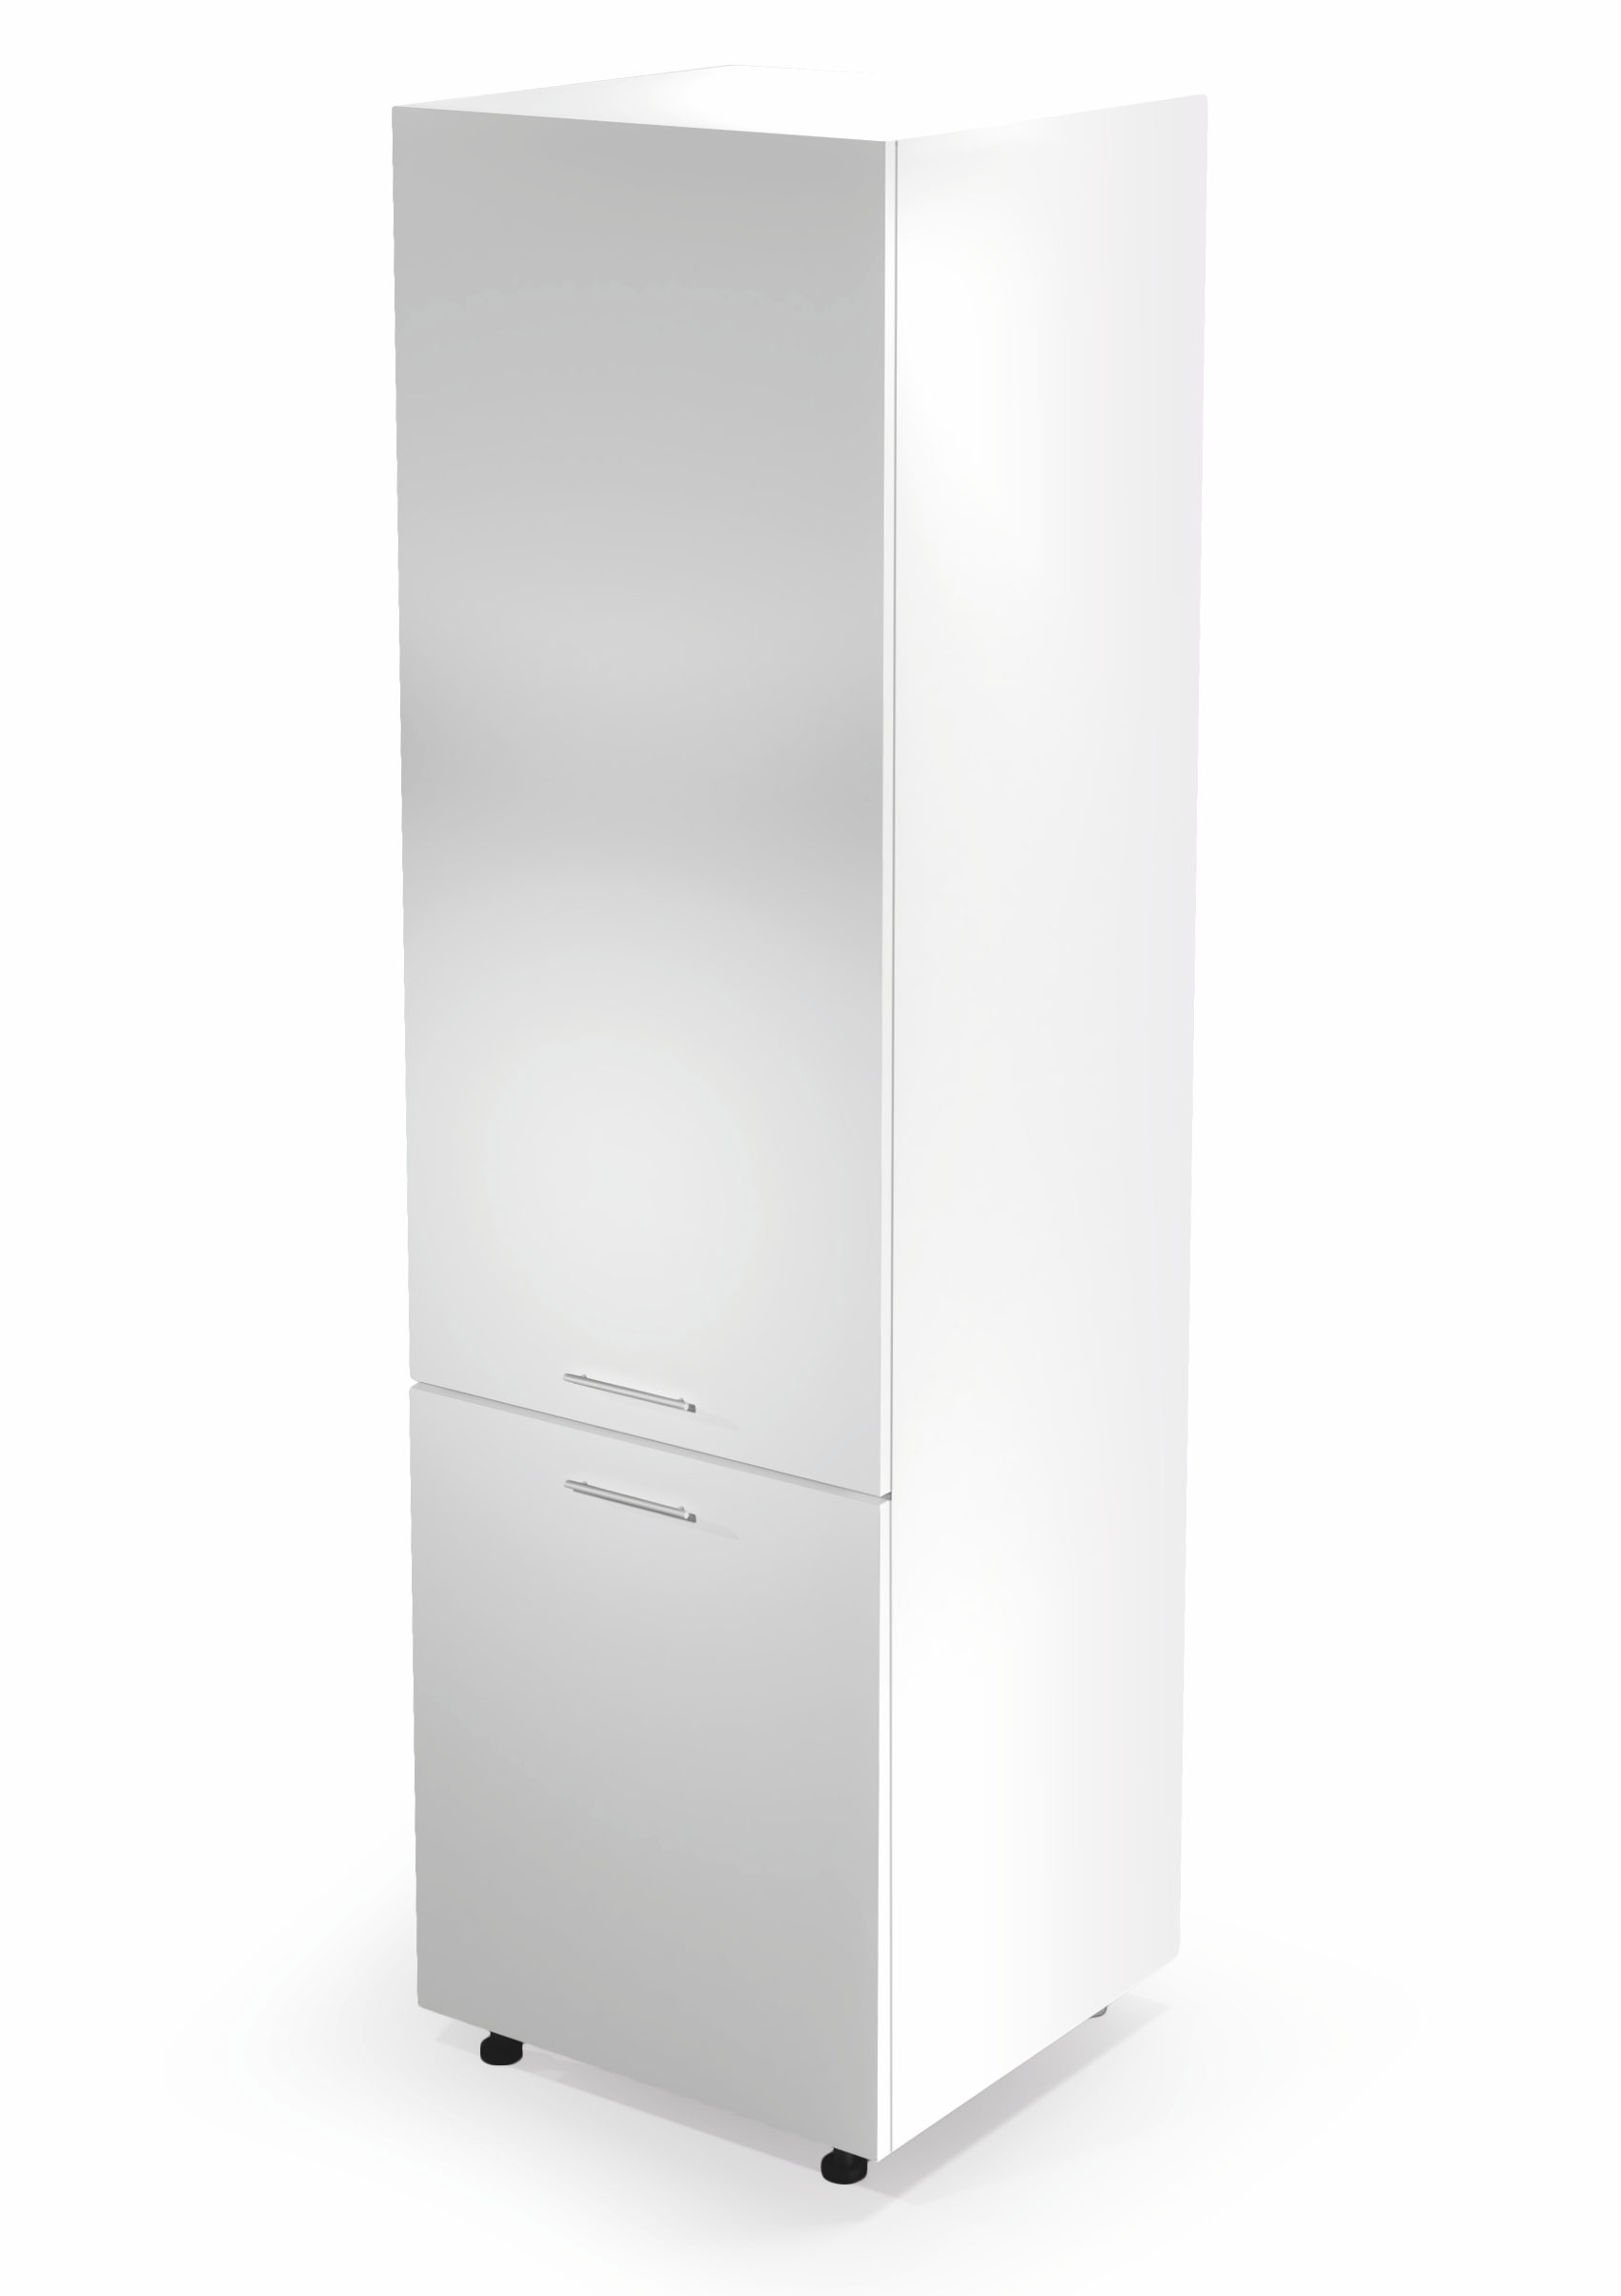 Vysoká kuchynská skrinka VENTO DL-60/214 na vstavanú chladničku - biela vento dl-60/214 Skrinka dolná vysoká Predná časť: Biely